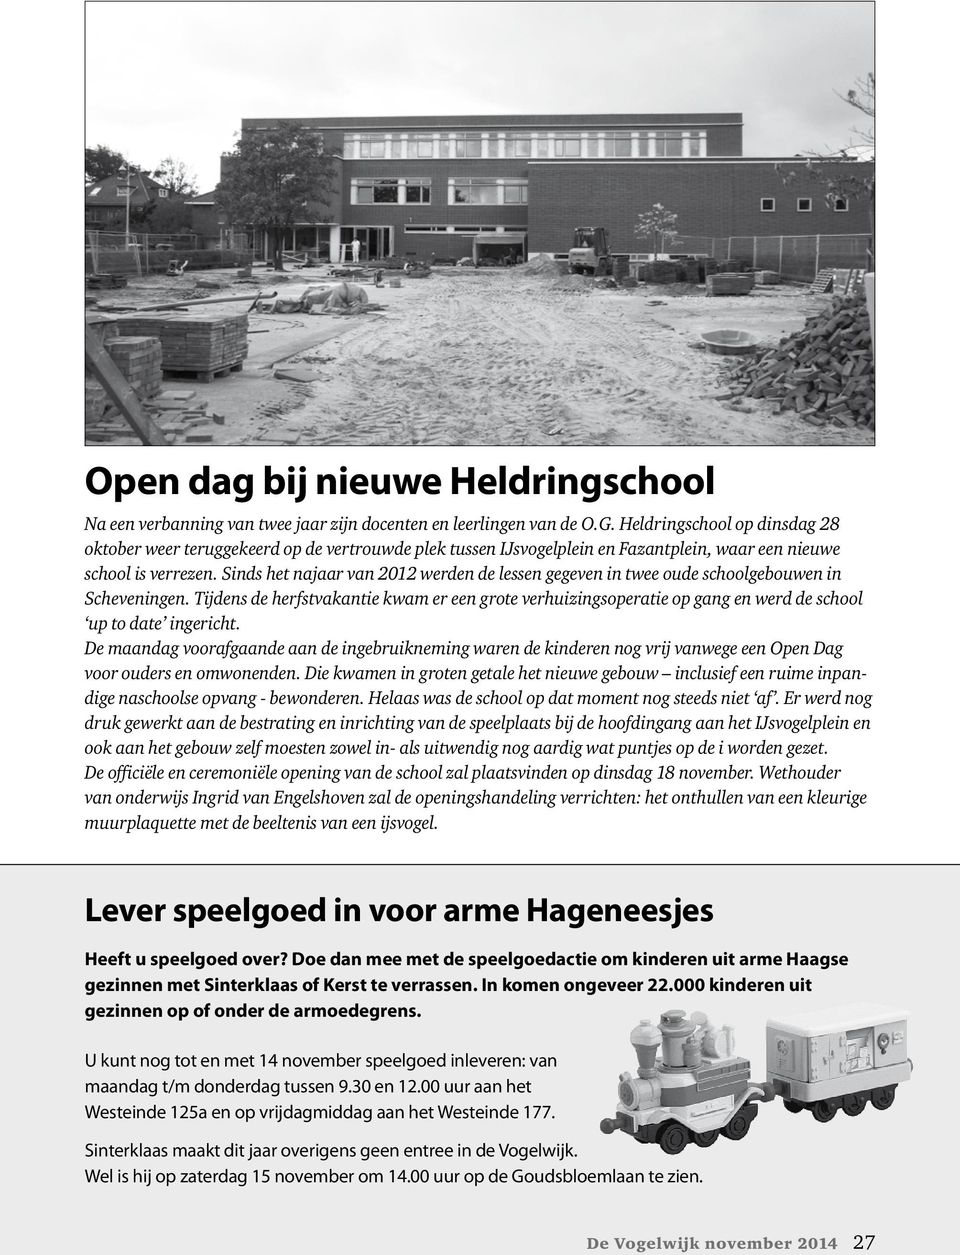 Sinds het najaar van 2012 werden de lessen gegeven in twee oude schoolgebouwen in Scheveningen.